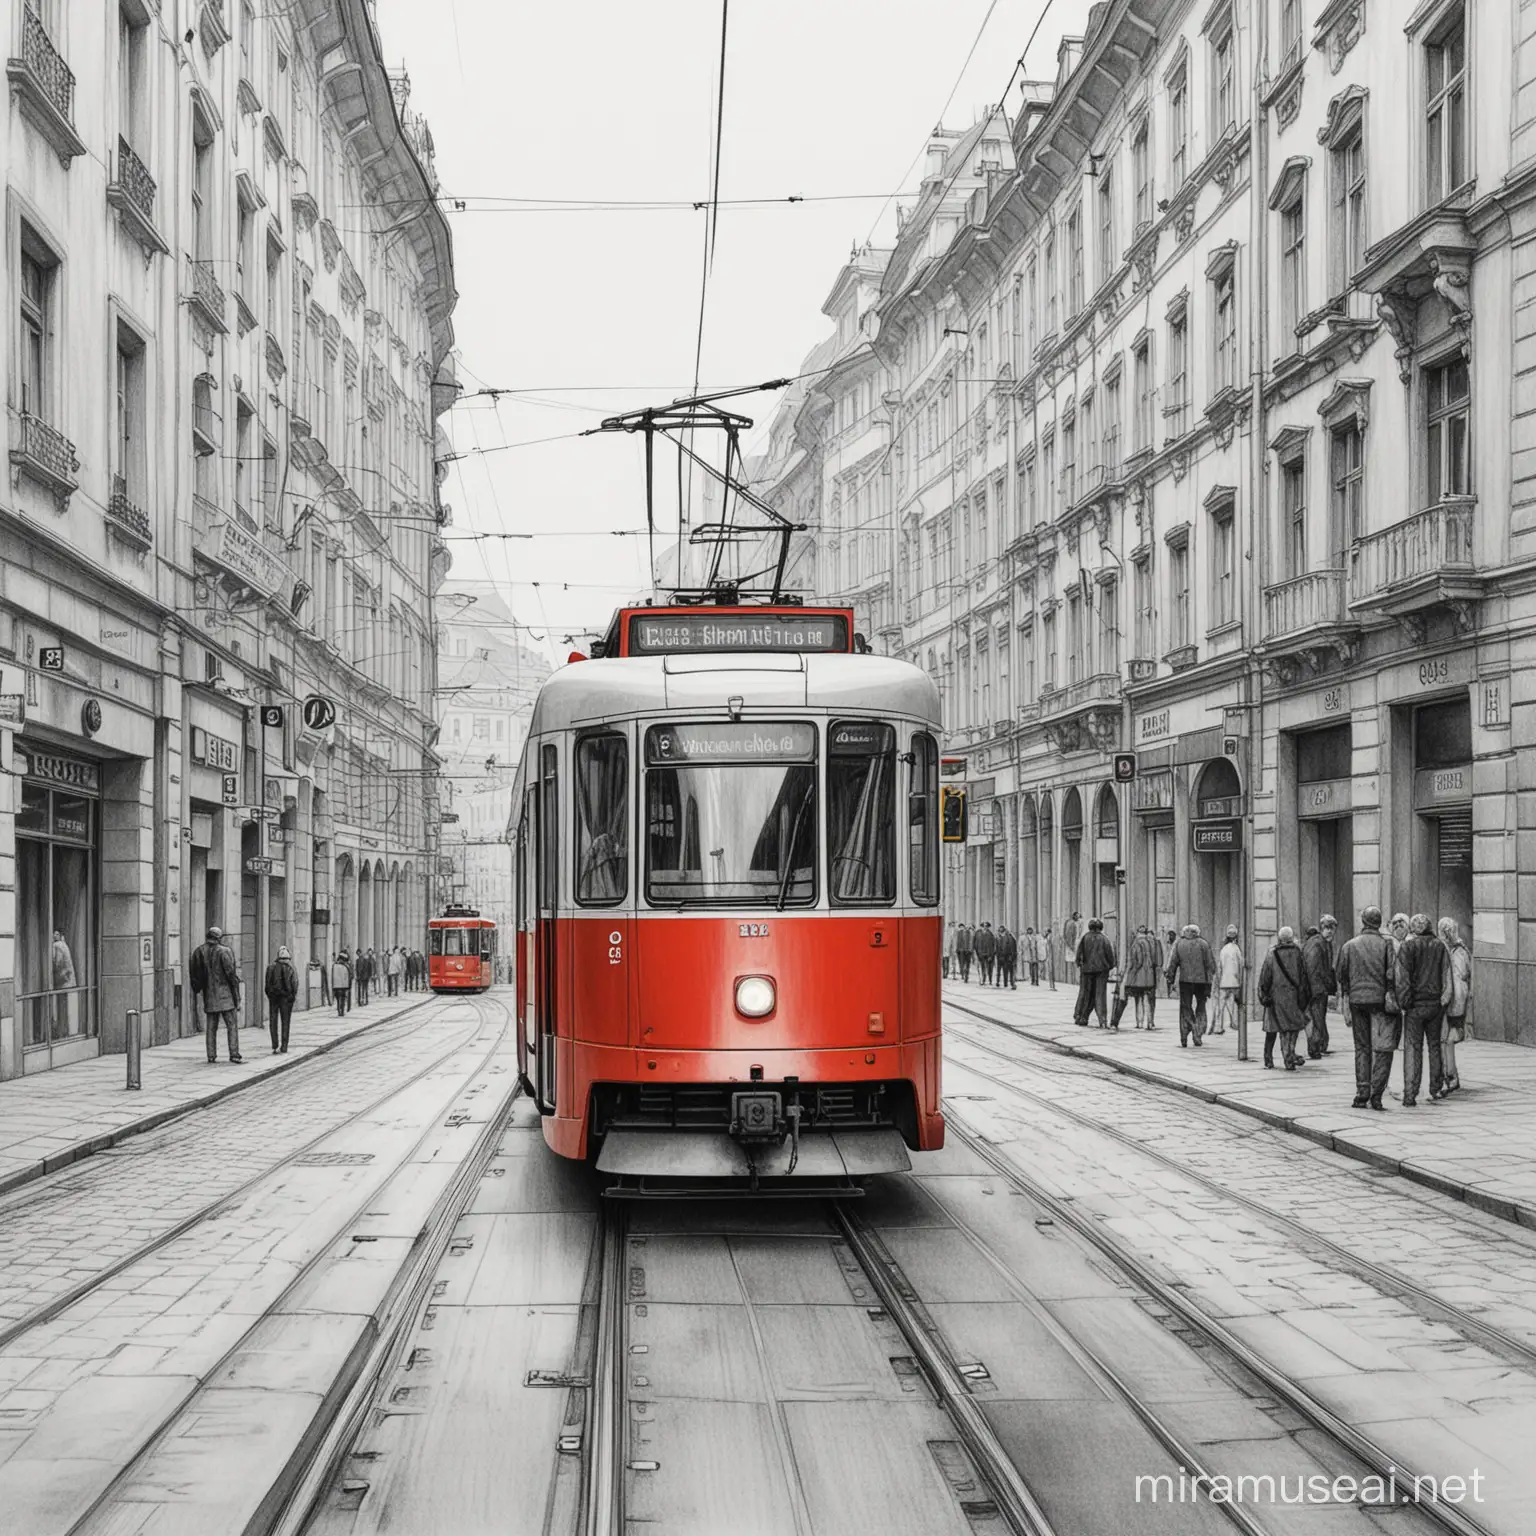 vytvoř kresbu moderní tramvaje která je červená a projíždí městem BRNO. Jedná se o kresbu tužkou

